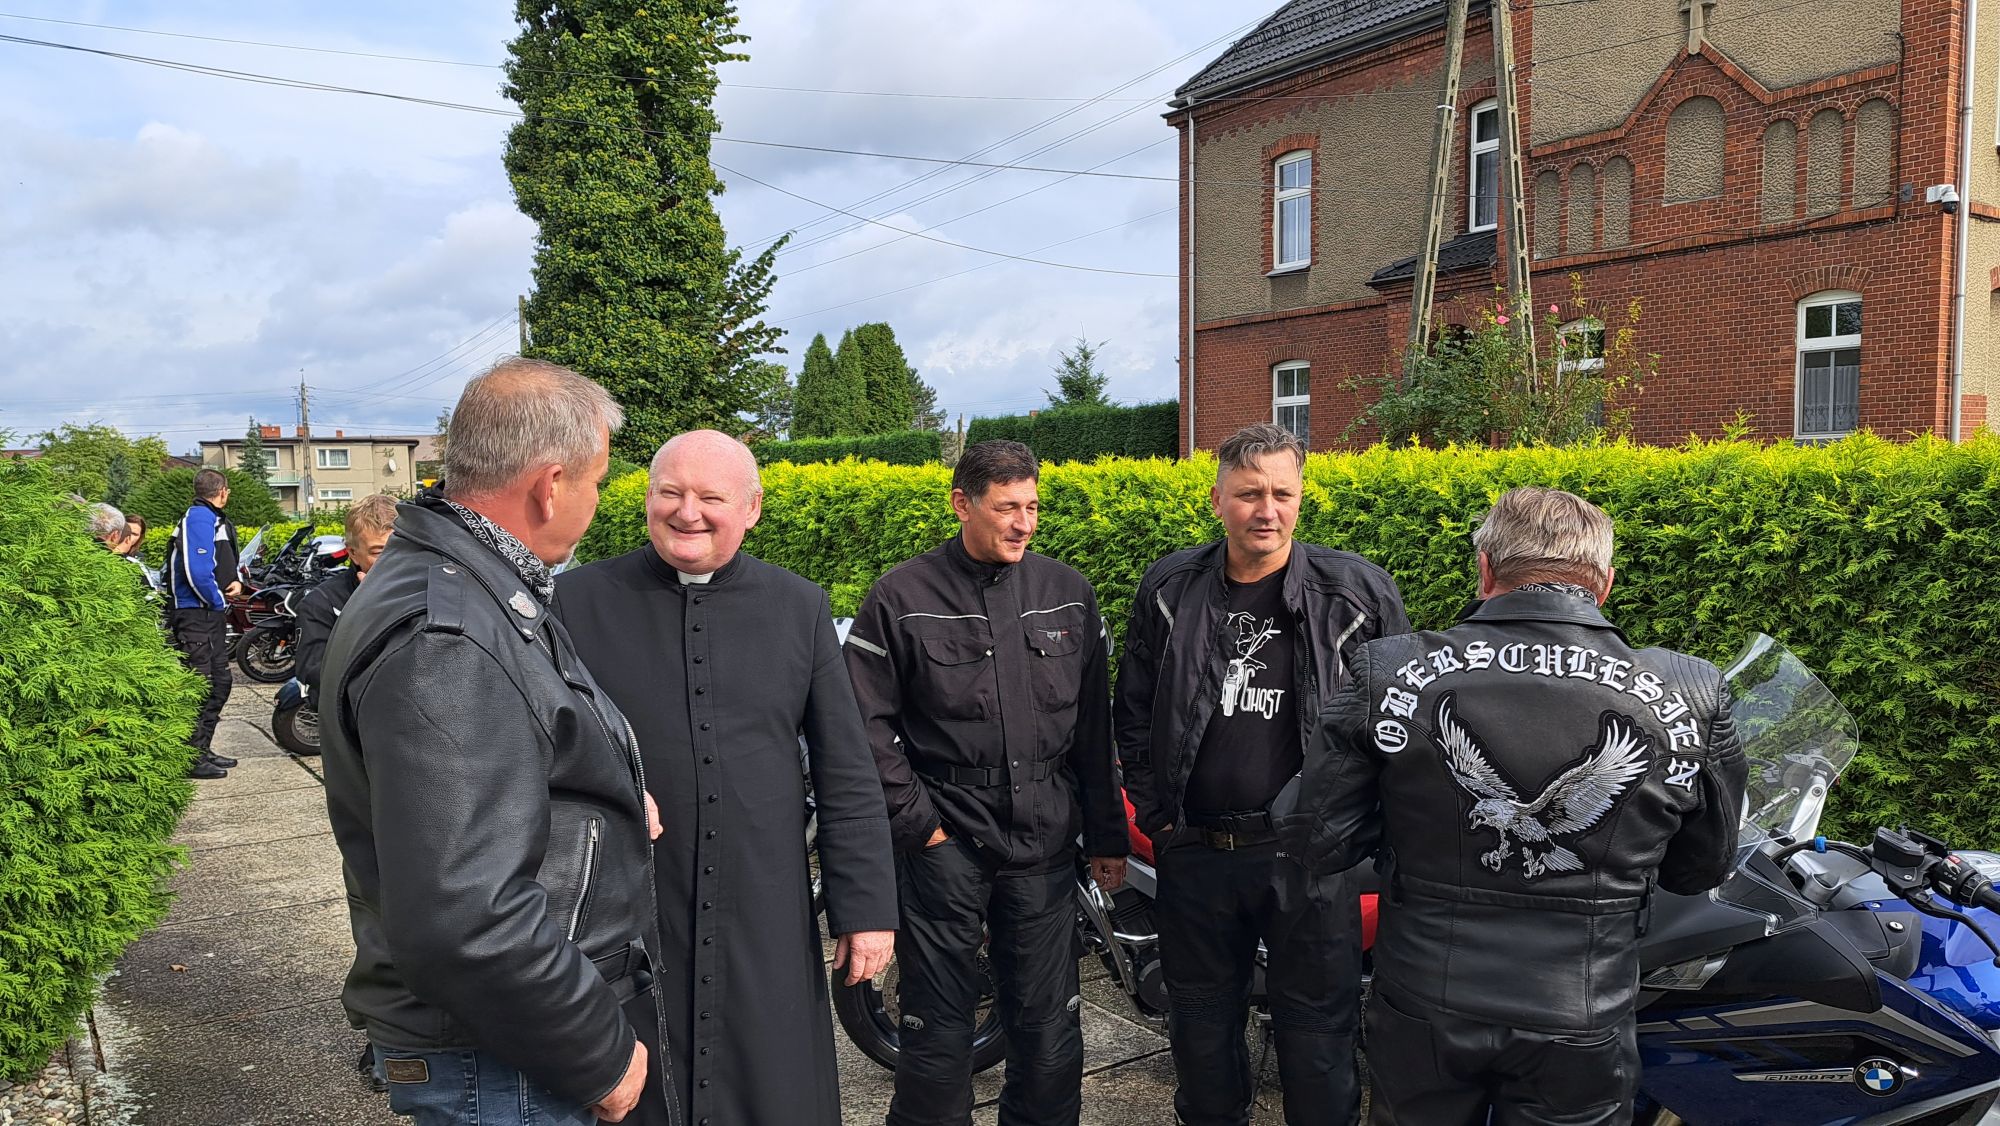 Pasja do motocykli sprawiła, że ks. Marcin Szaboń zdecydował się w tym roku dołączyć do "duchowej rodziny" z Kuźni Raciborskiej